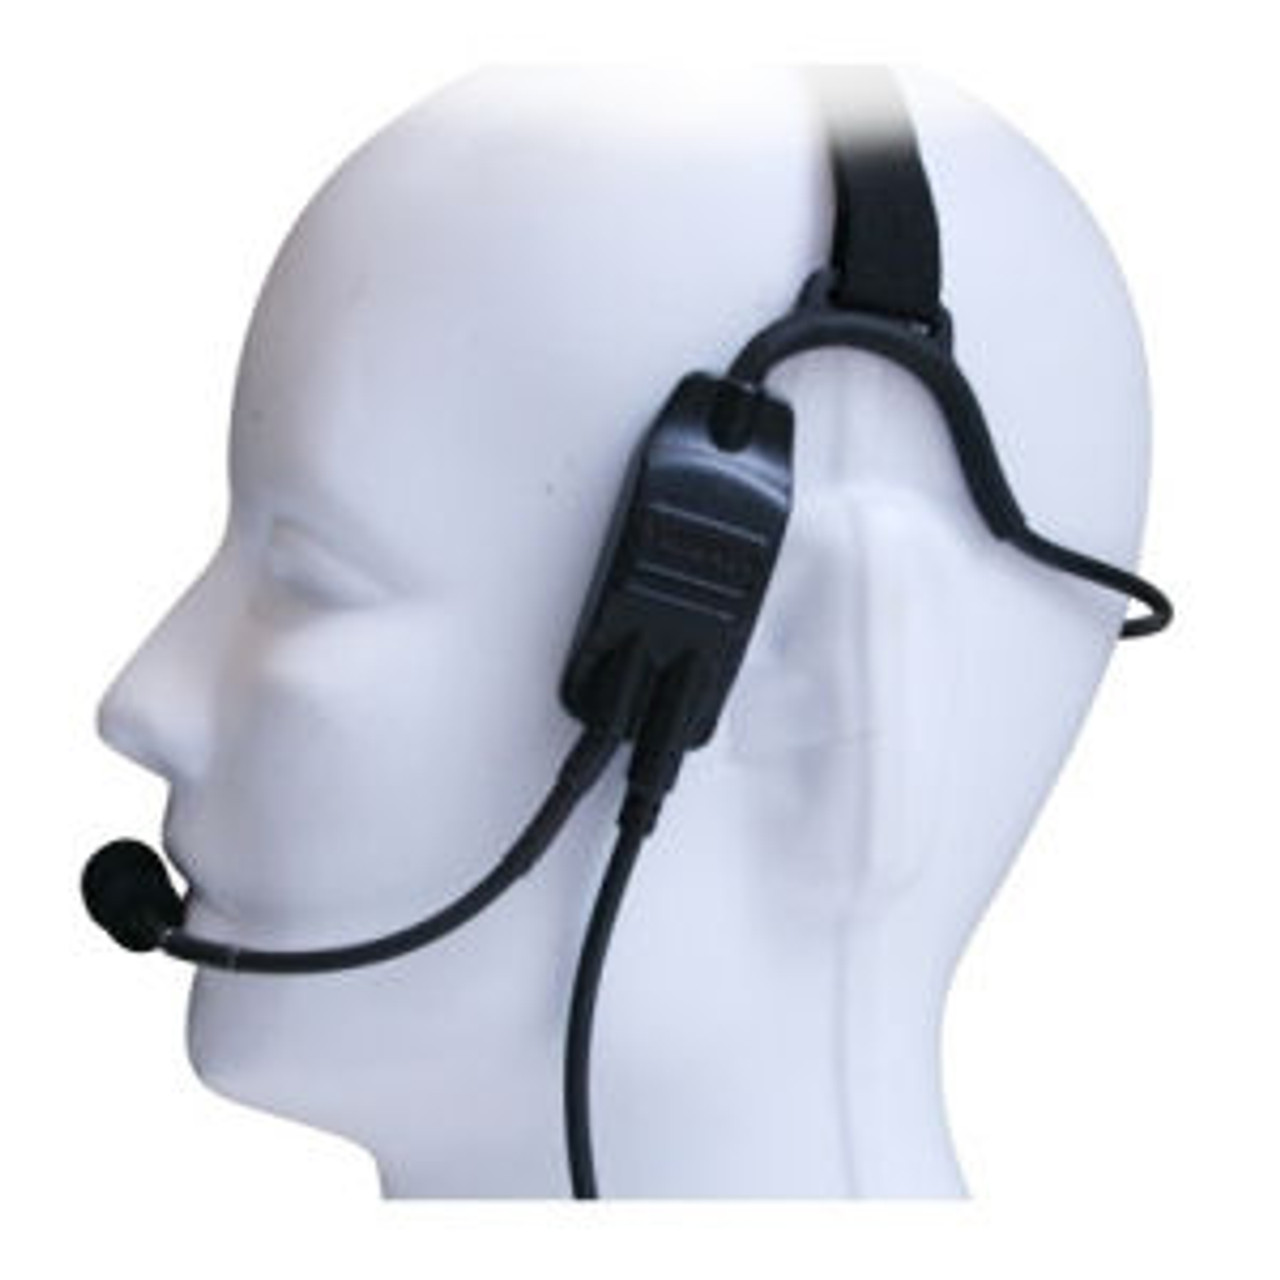 Kenwood TK-220 Temple Transducer Headset